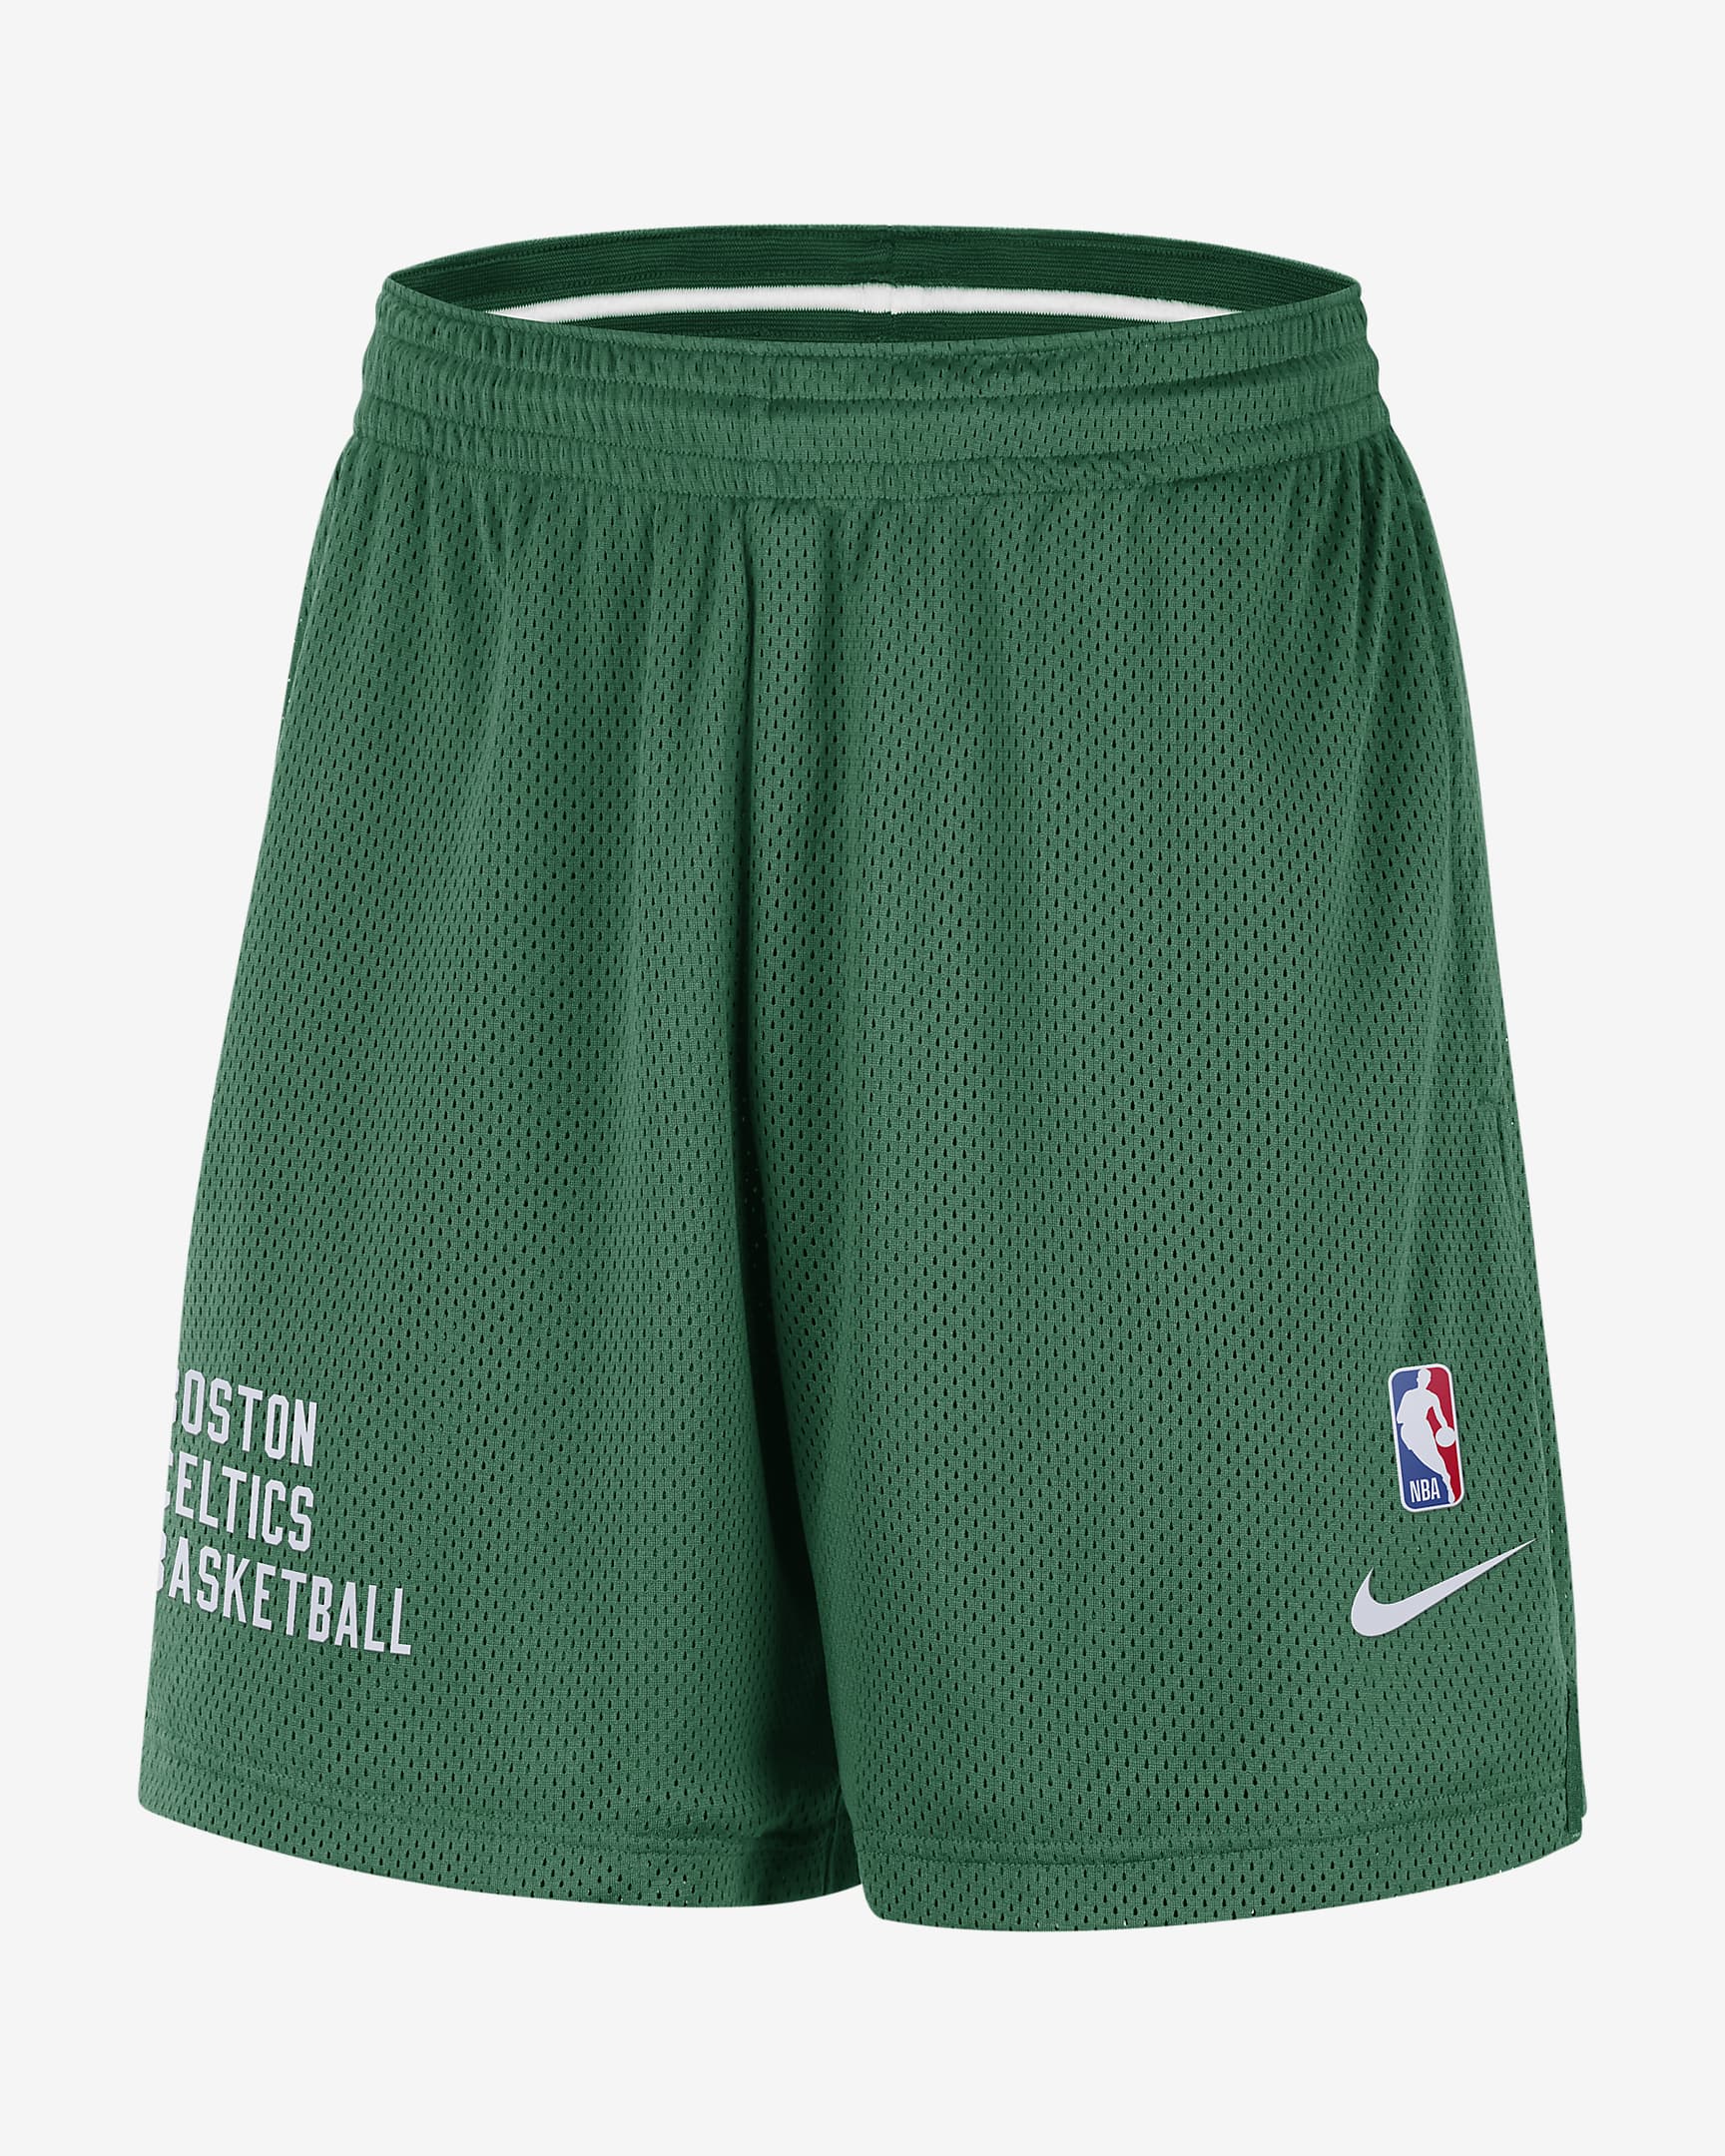 Boston Celtics Men's Nike NBA Mesh Shorts. Nike NO